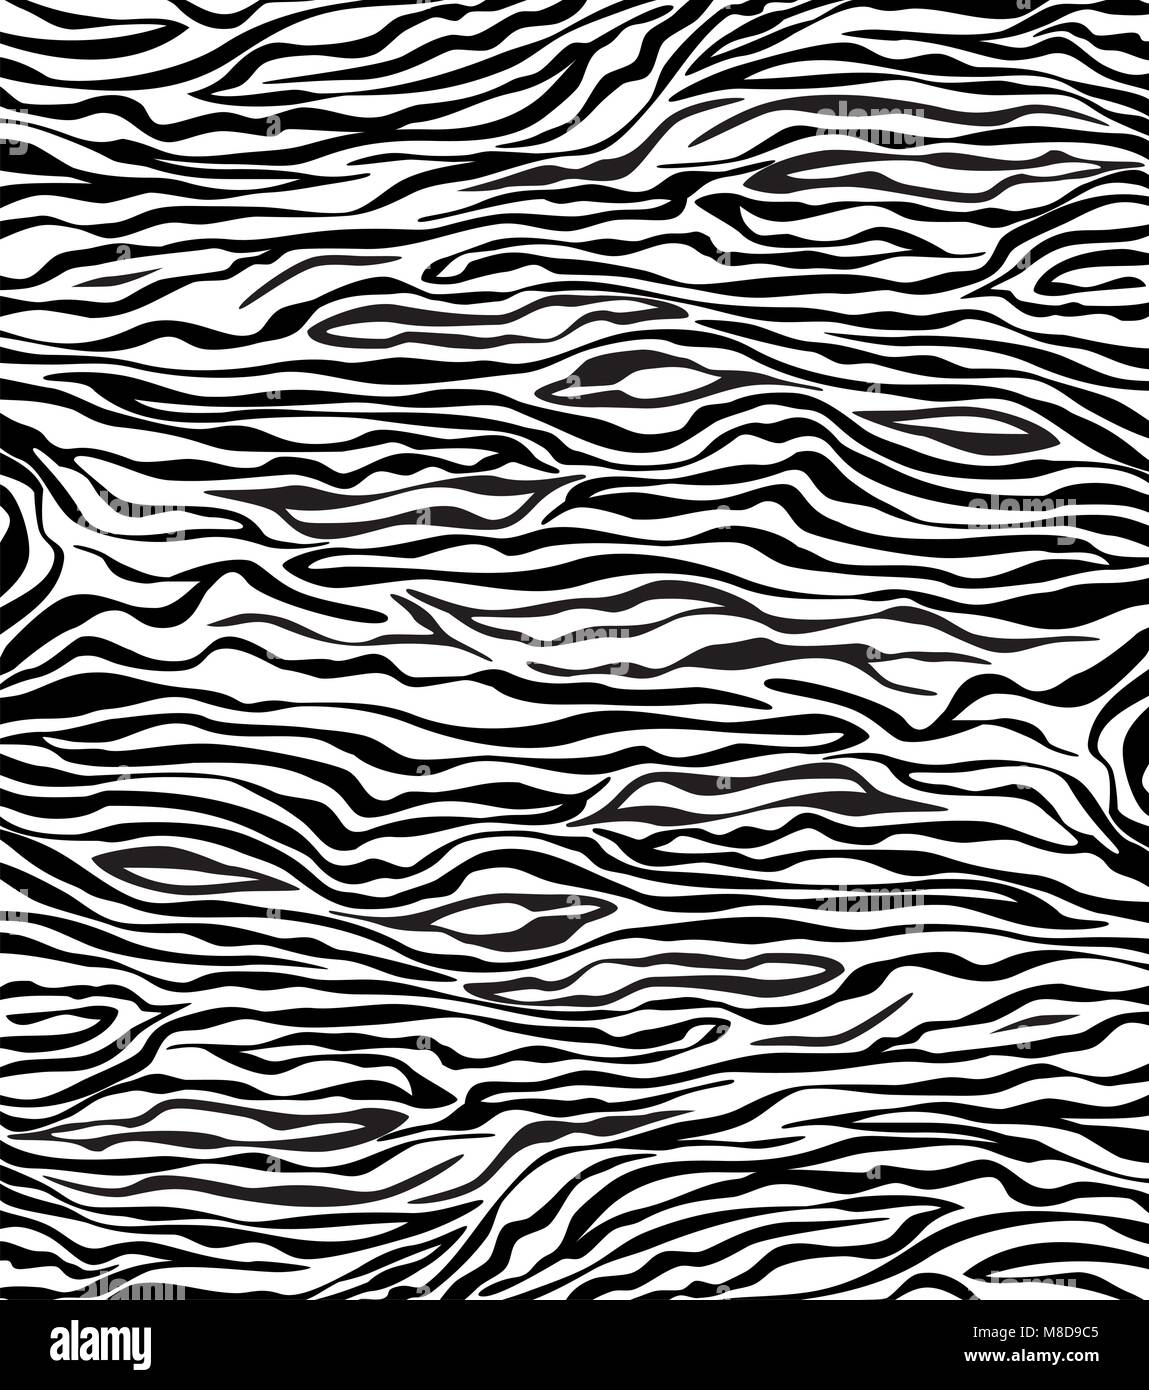 vector abstract skin texture of zebra Stock Vector